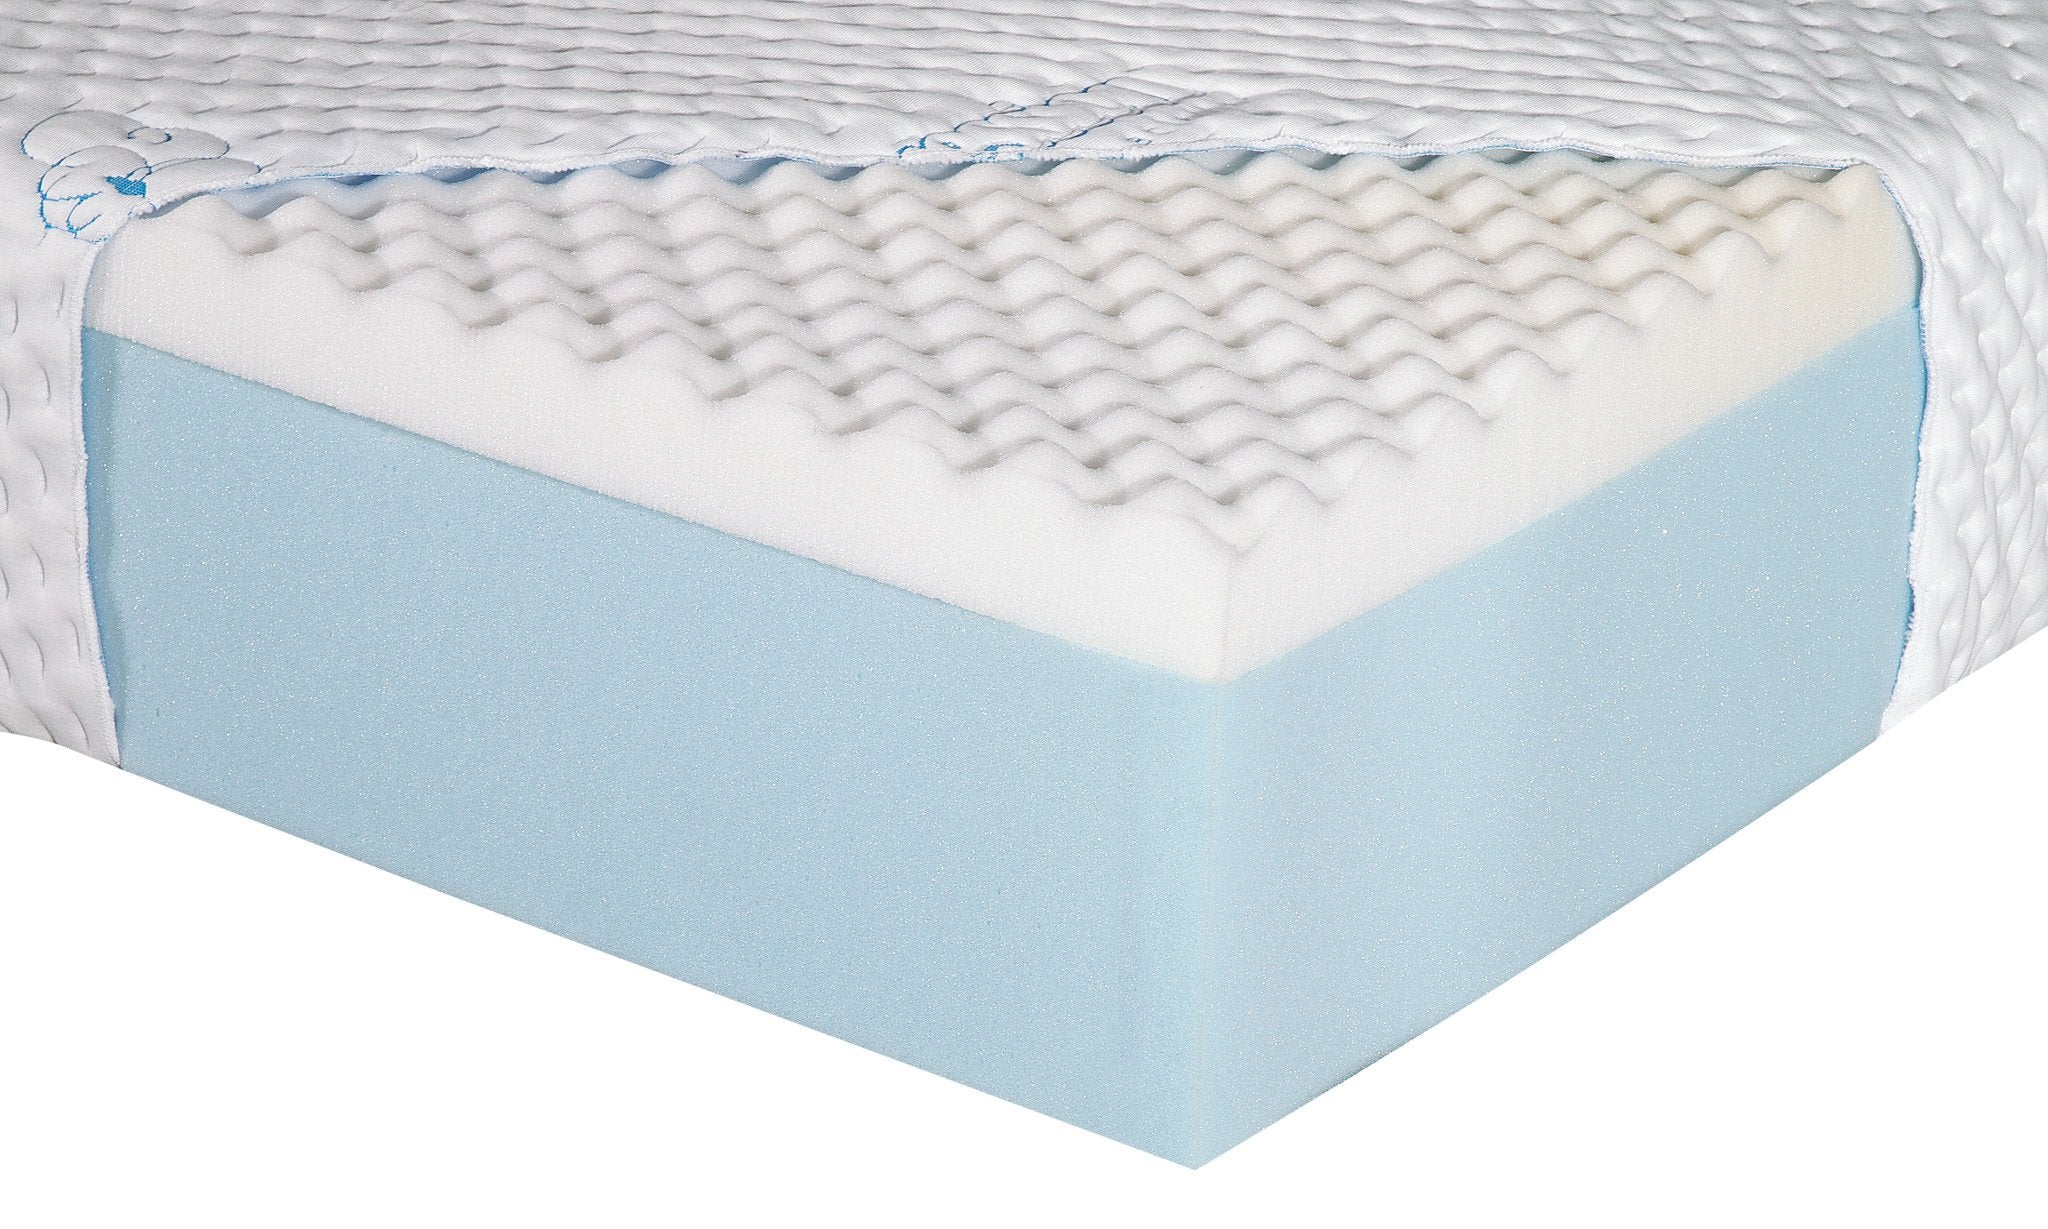 egg shell foam mattress target